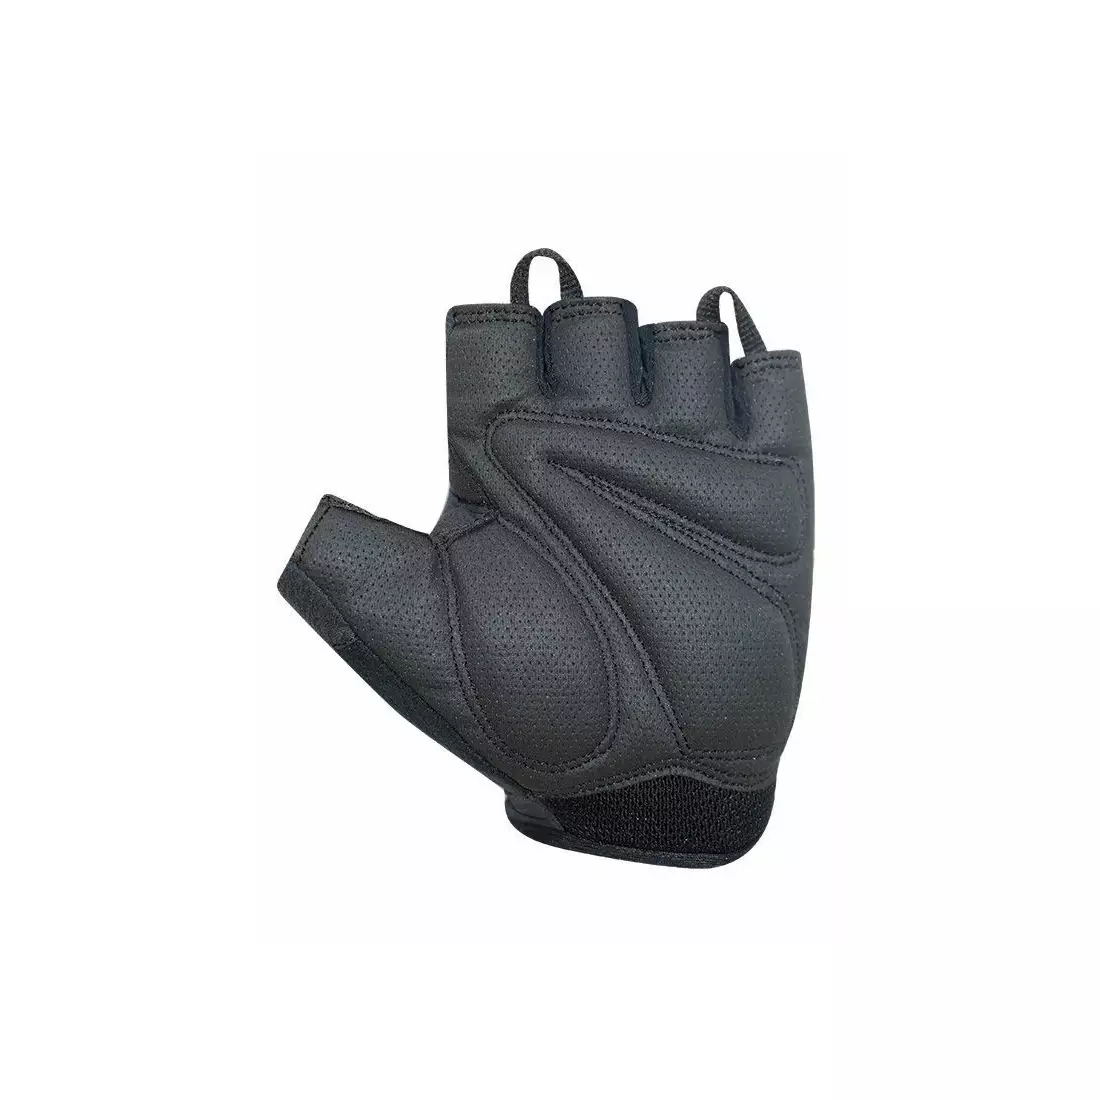 CHIBA LADY SUPER LIGHT dámské cyklistické rukavice, šedo-černé 3090220